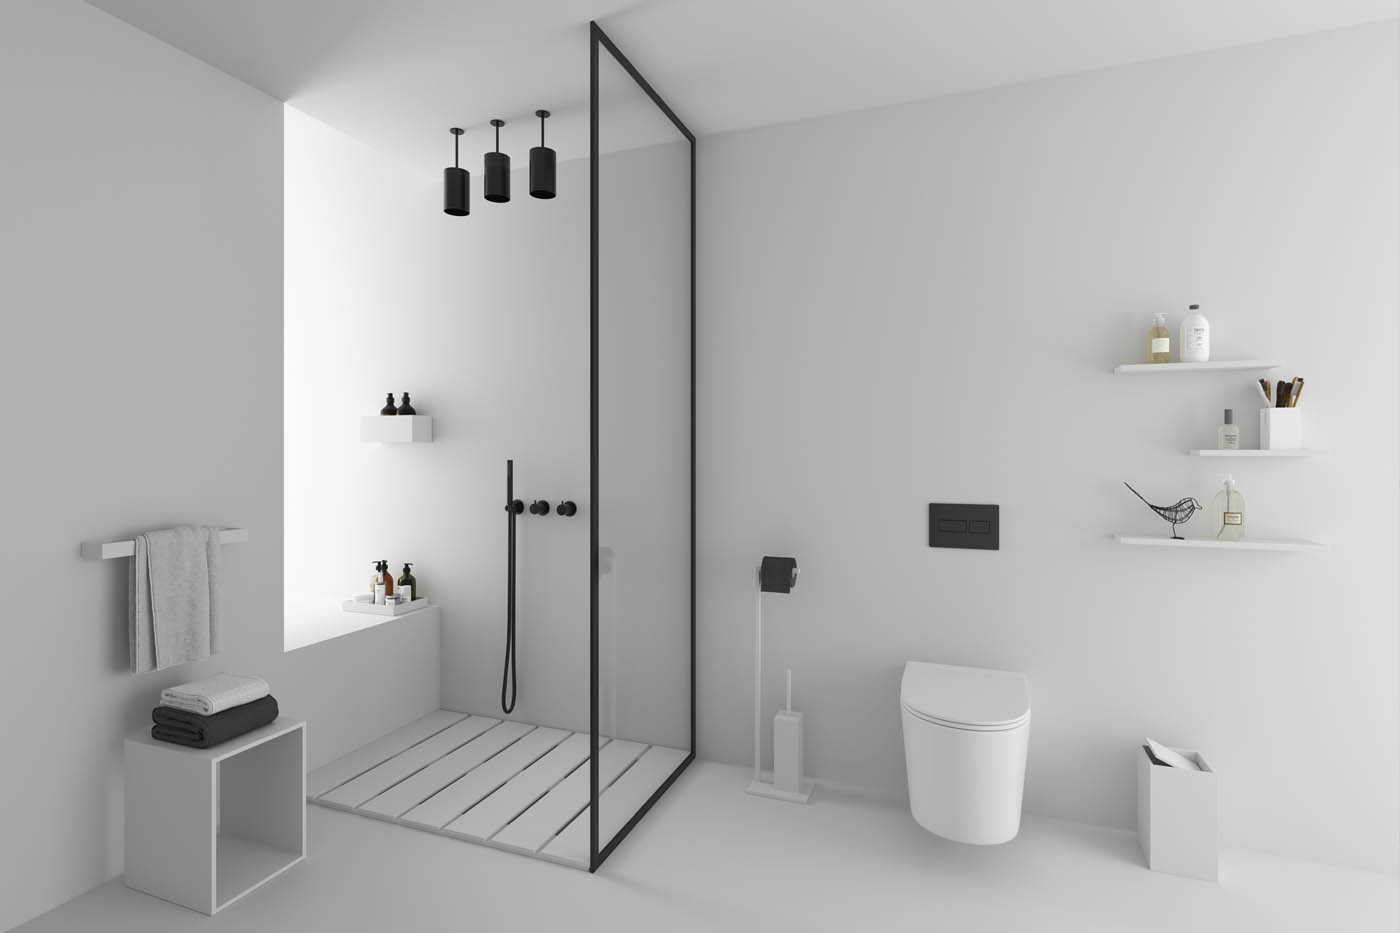 Render 3D de un ambiente con accesorios de baño para un catálogo